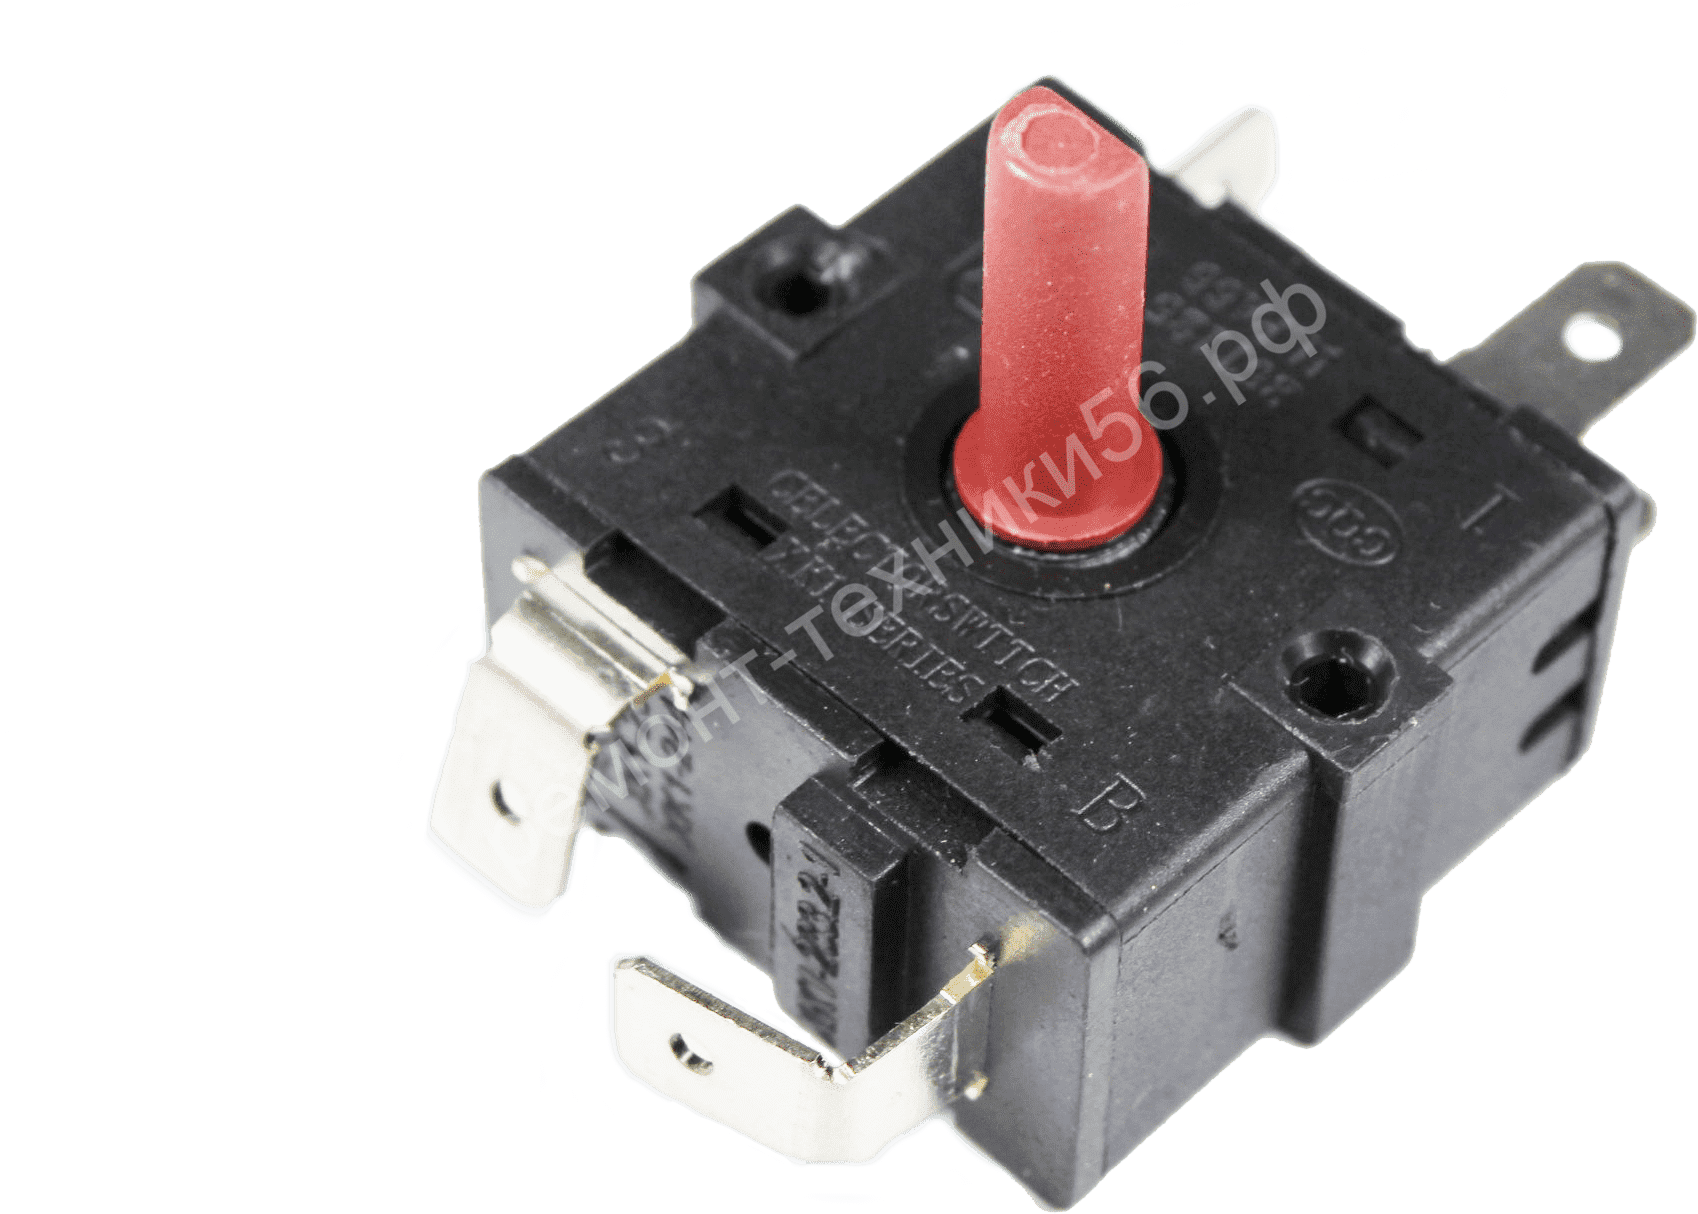 Переключатель Rotary Switch XK1-233,2-1 по выгодной цене фото1